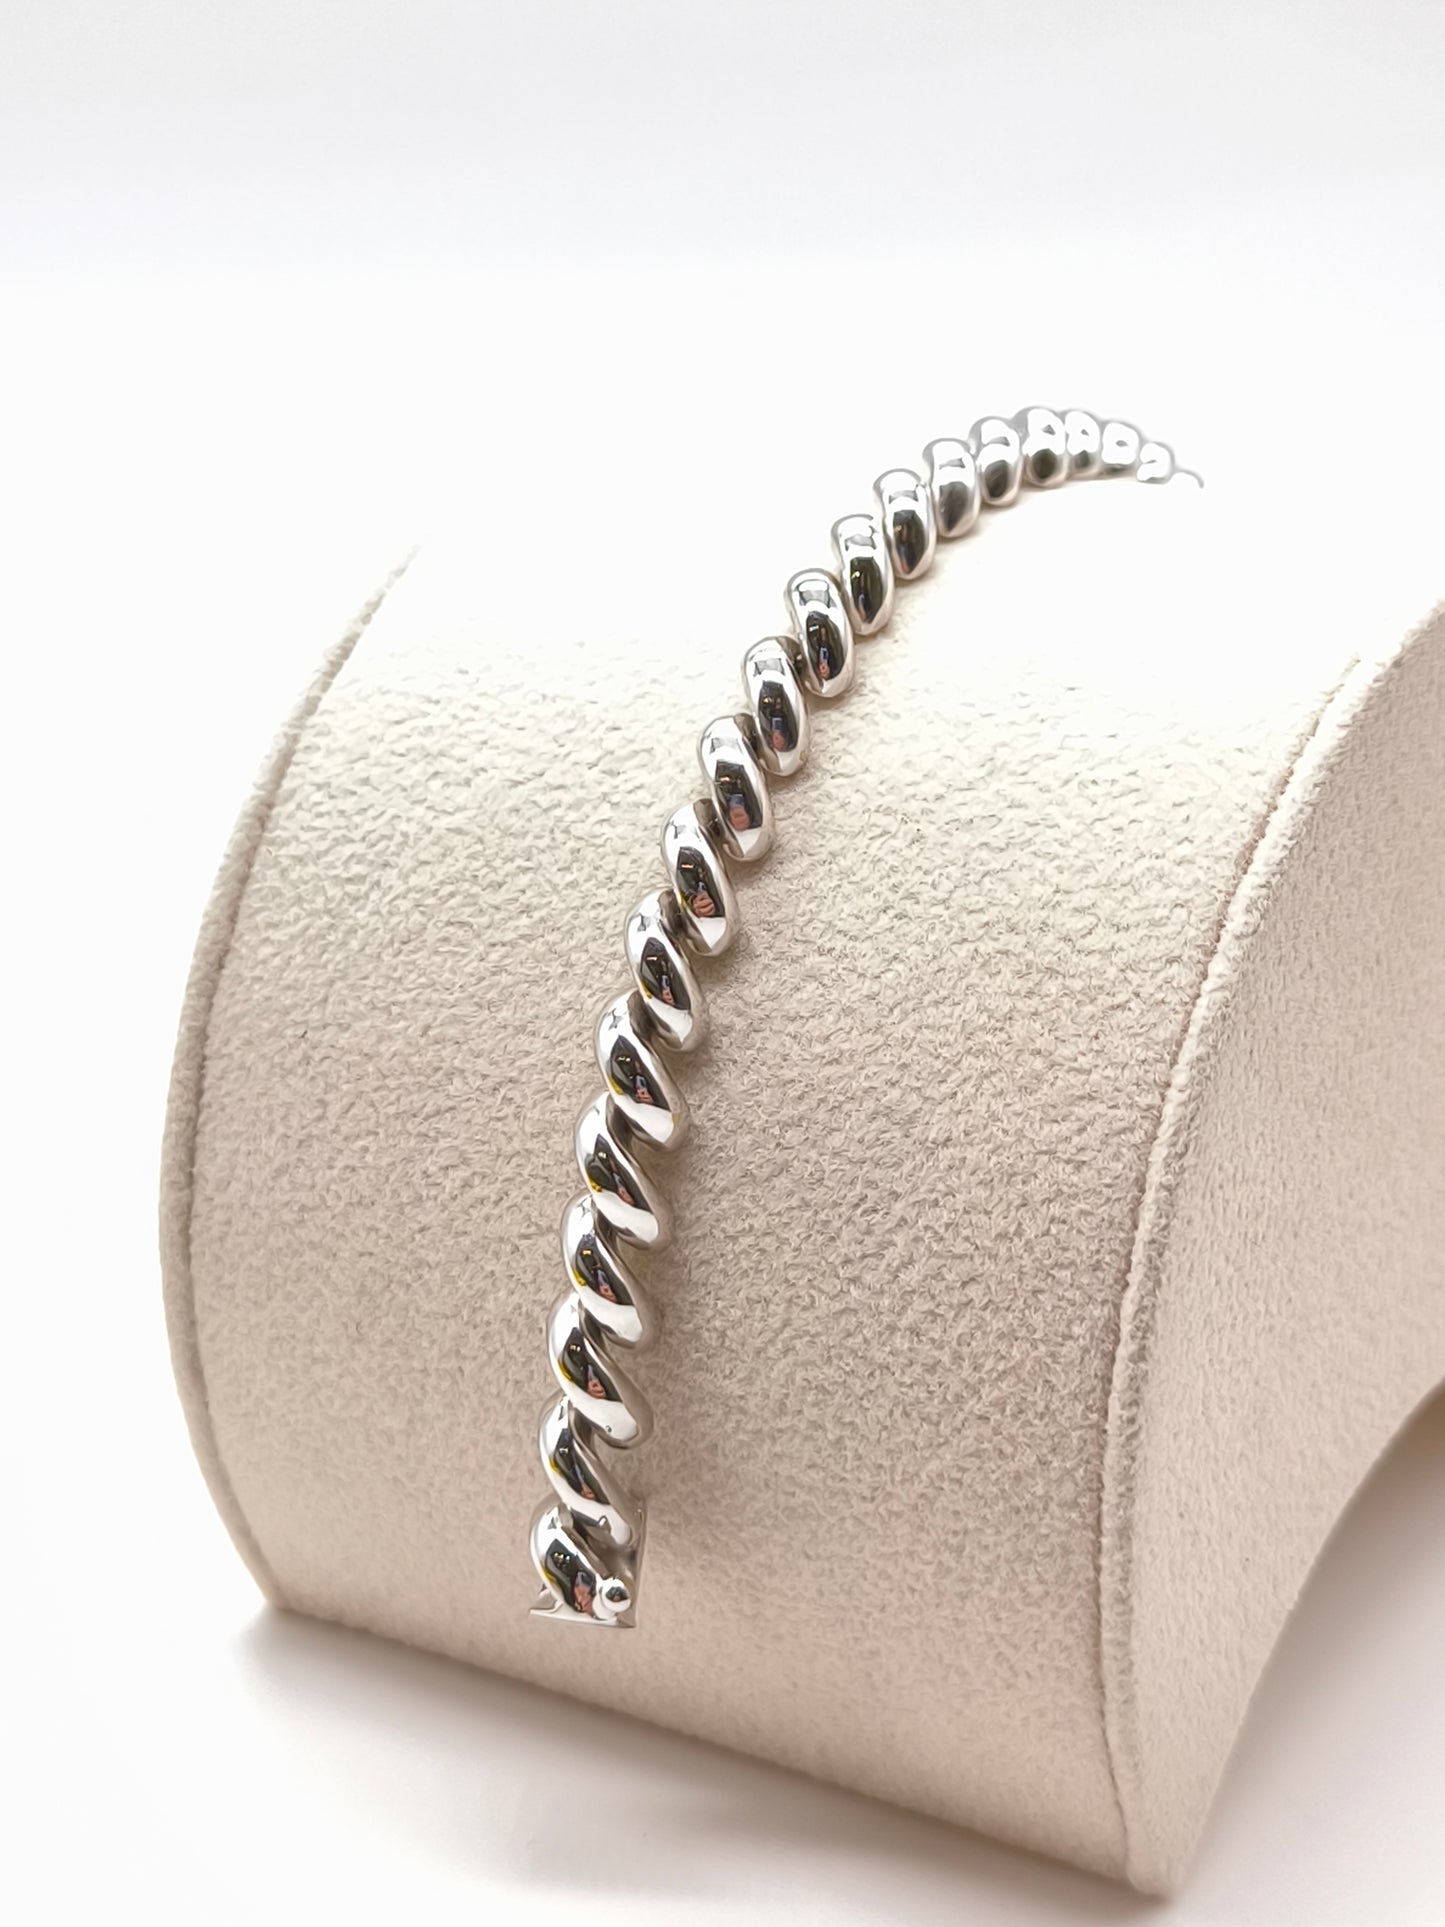 White gold torcion mesh bracelet